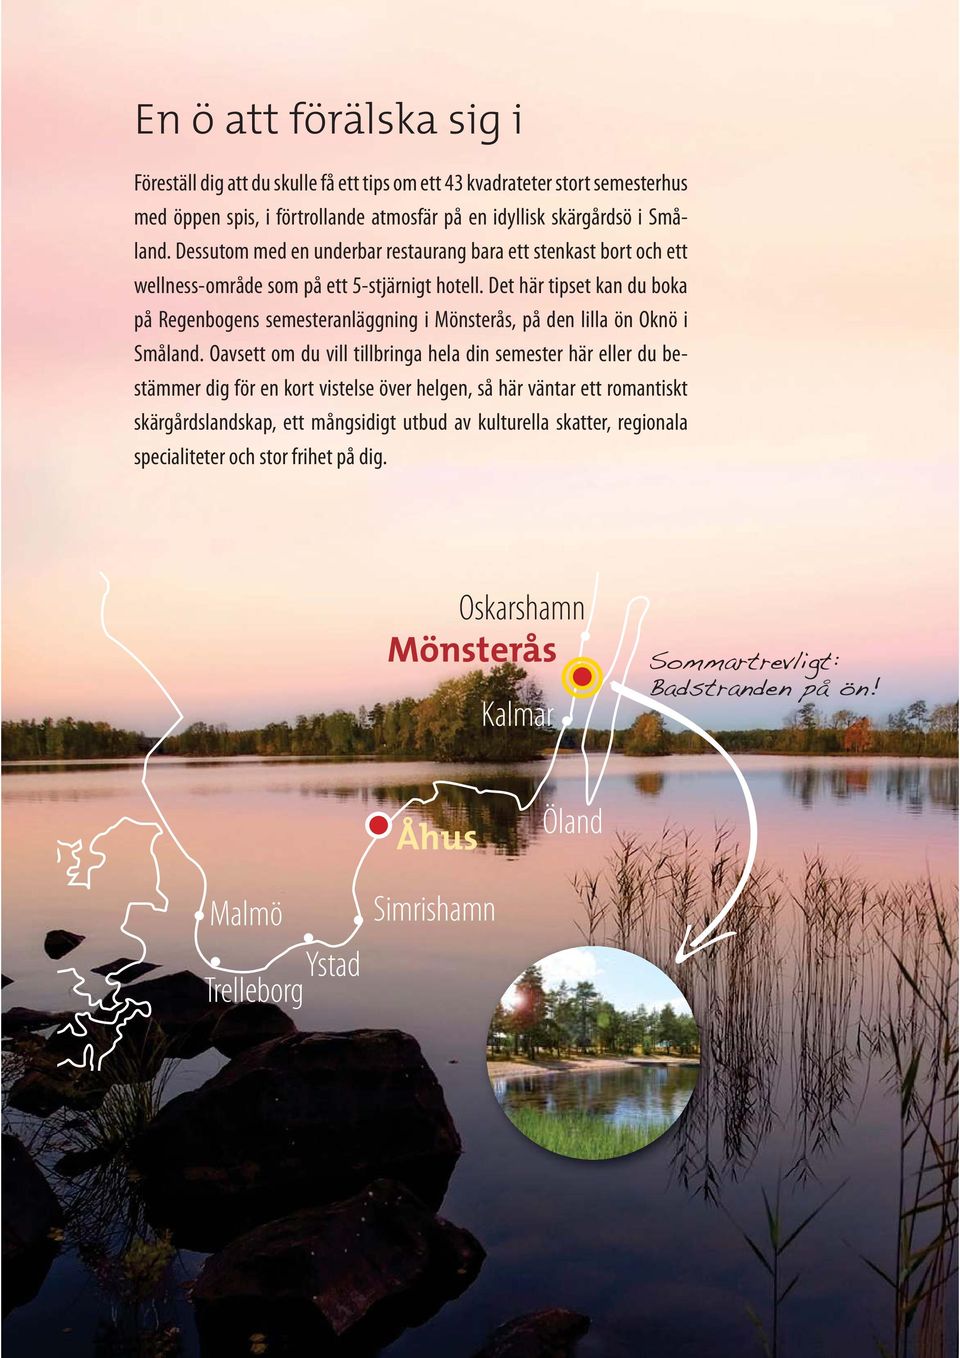 Det här tipset kan du boka på Regenbogens semesteranläggning i Mönsterås, på den lilla ön Oknö i Småland.